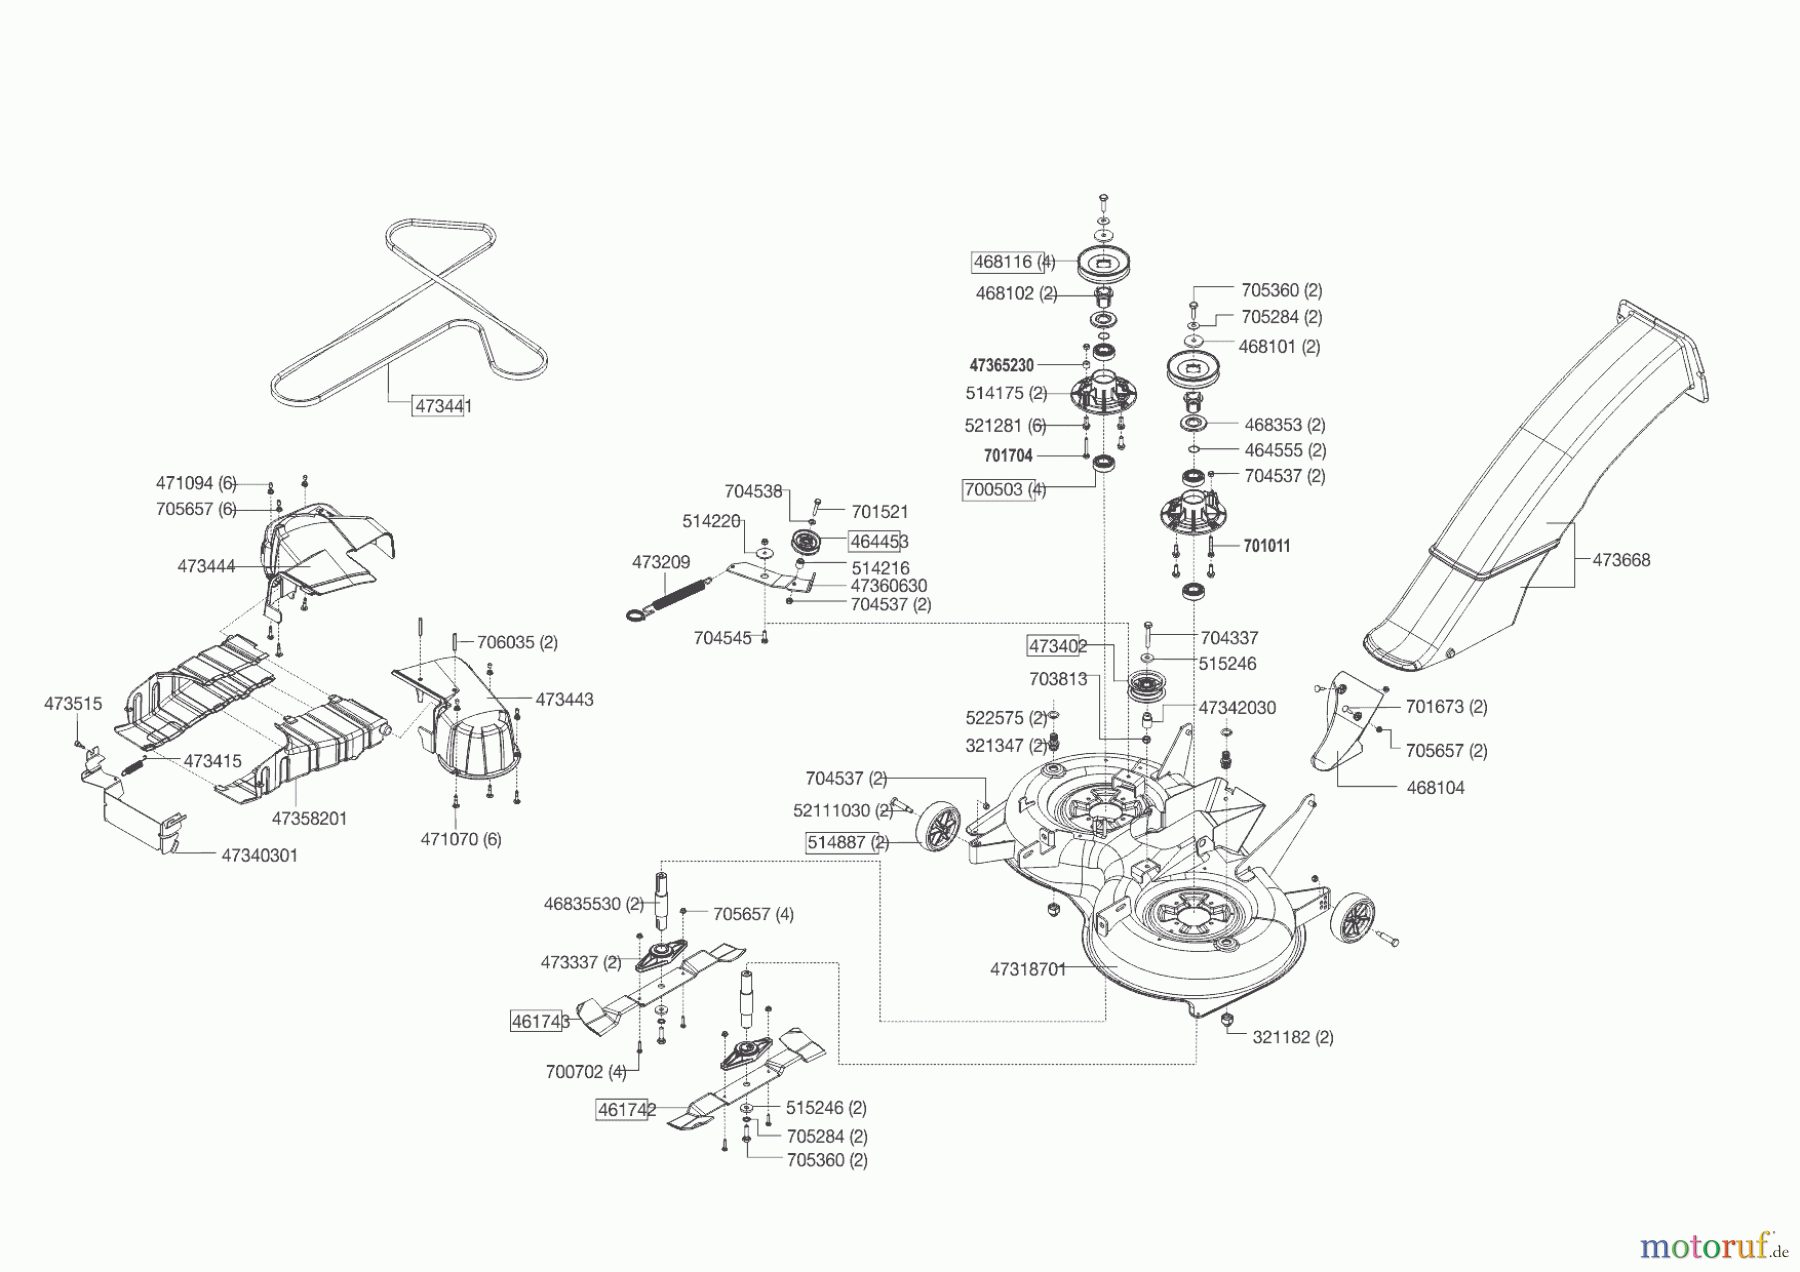  Powerline Gartentechnik Rasentraktor T 18-95.4 HD  09/2014 - 03/2016 Seite 6